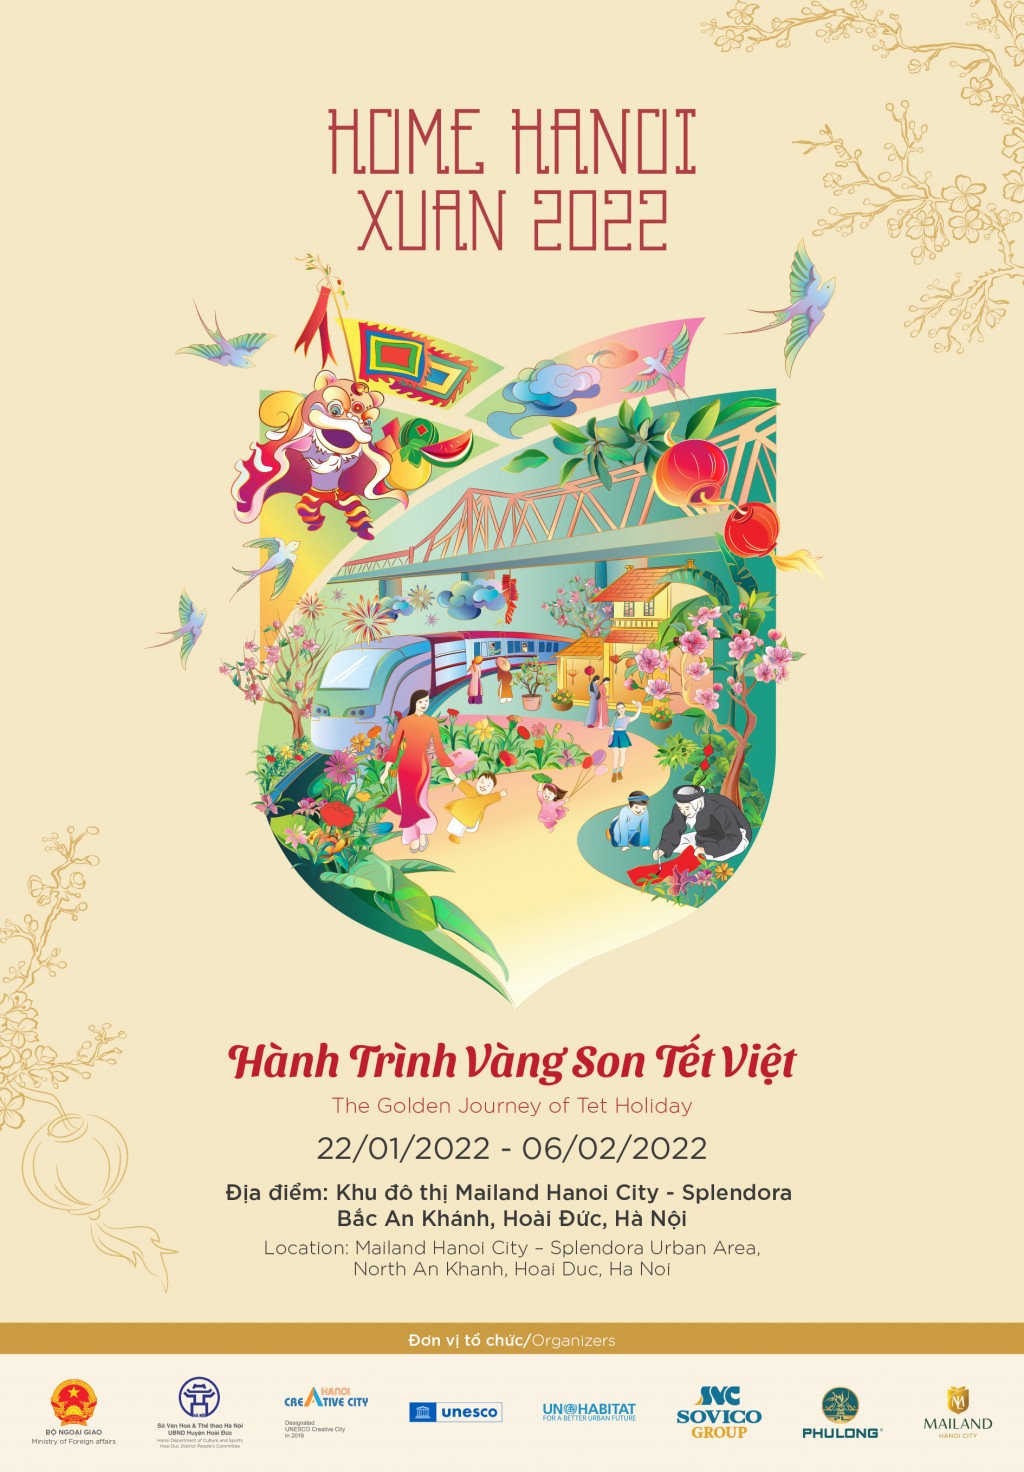 Lễ hội Đường hoa xuân Hà Nội - Hành trình vàng son Tết Việt